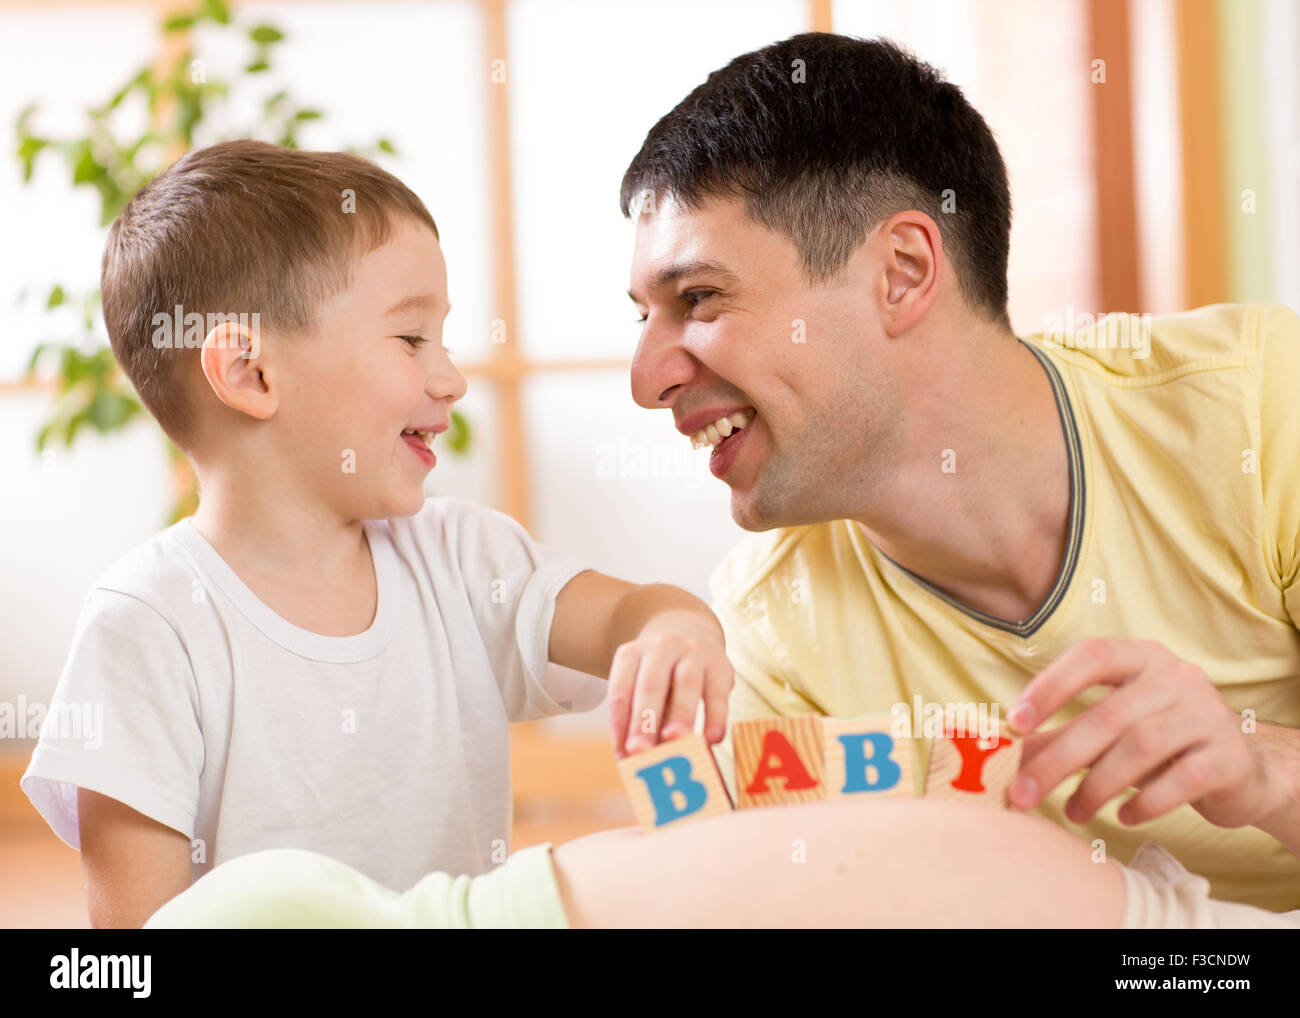 Kind junge und sein Vater spielen mit Würfeln am Bauch der schwangeren Mutter Stockfoto